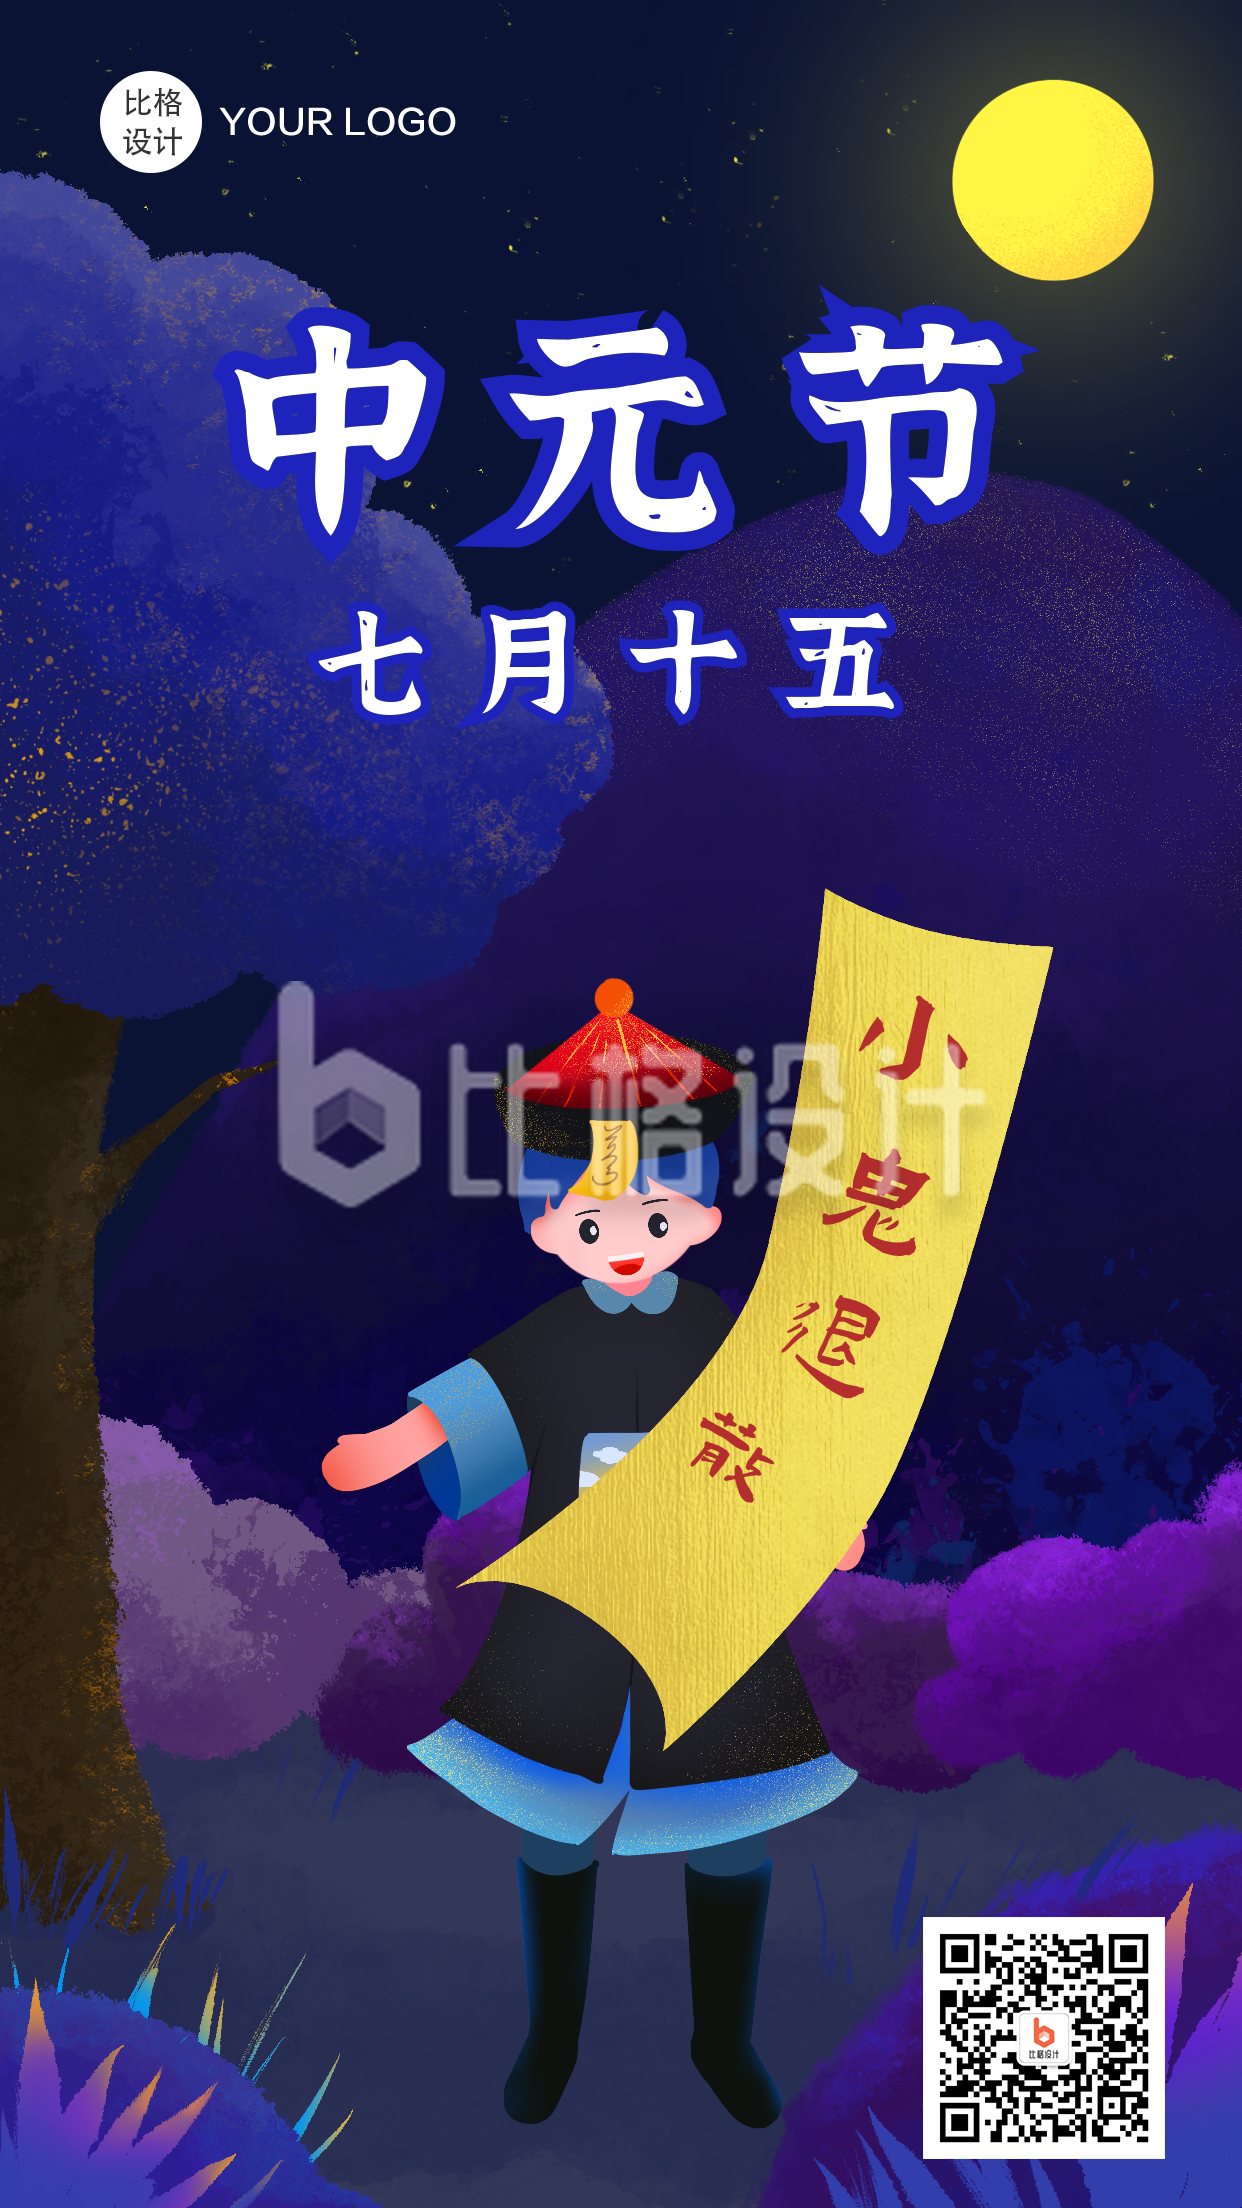 中元节驱散穷鬼趣味性手绘手机海报